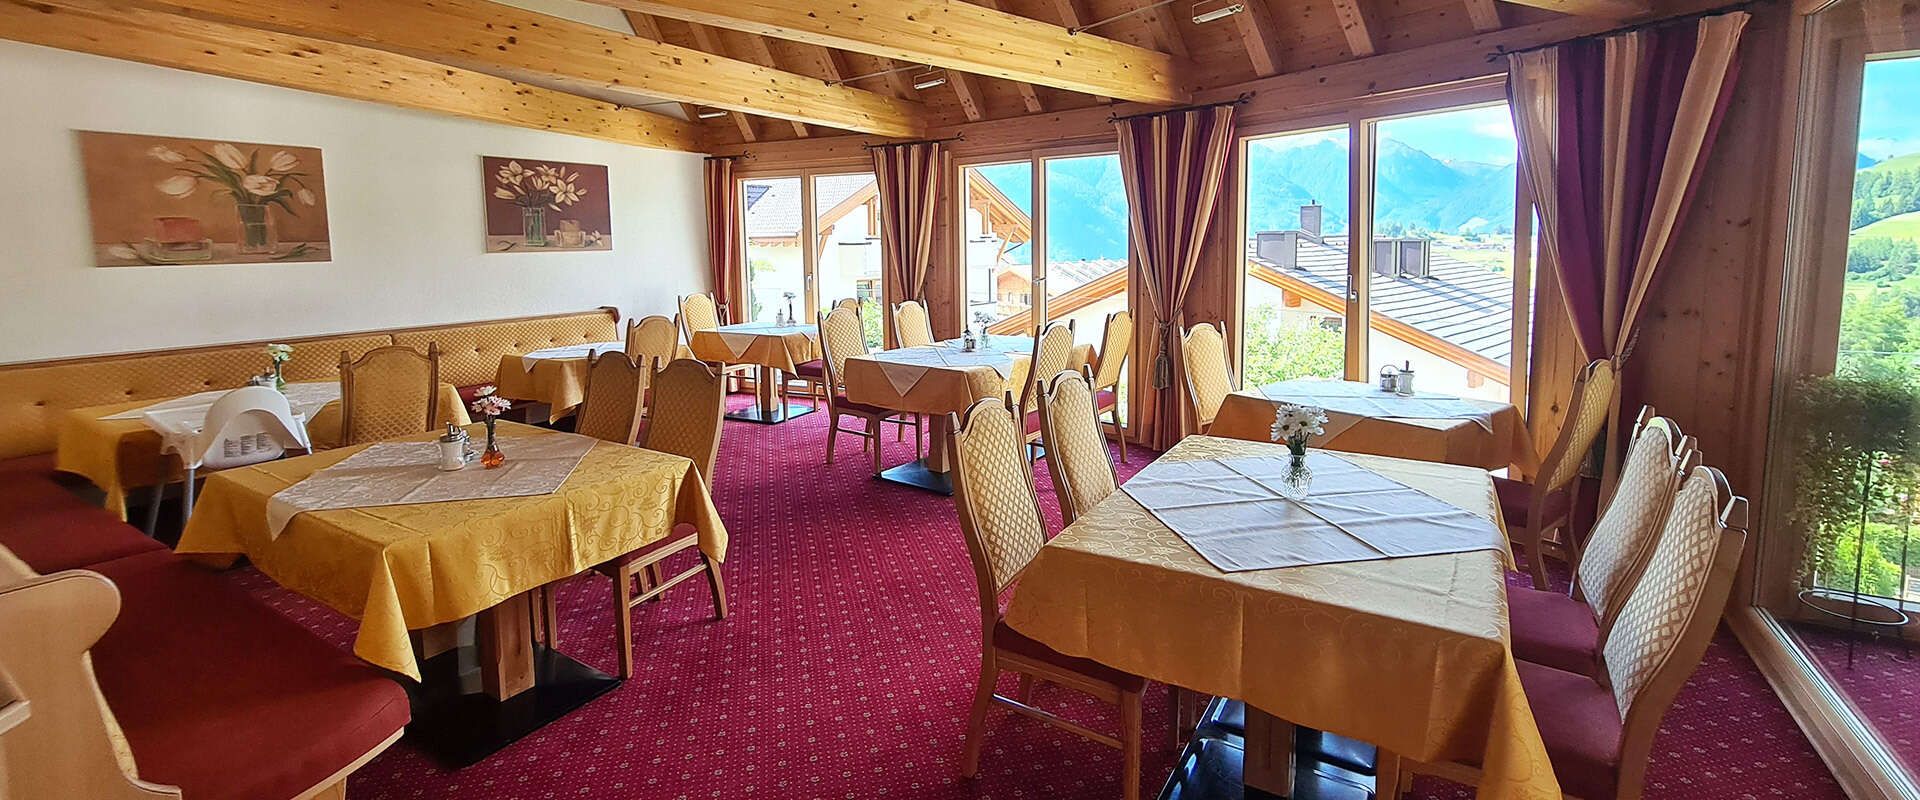 Frühstücksraum im Hotel Sonnenheim mit Ausblick auf die Fisser Bergwelt